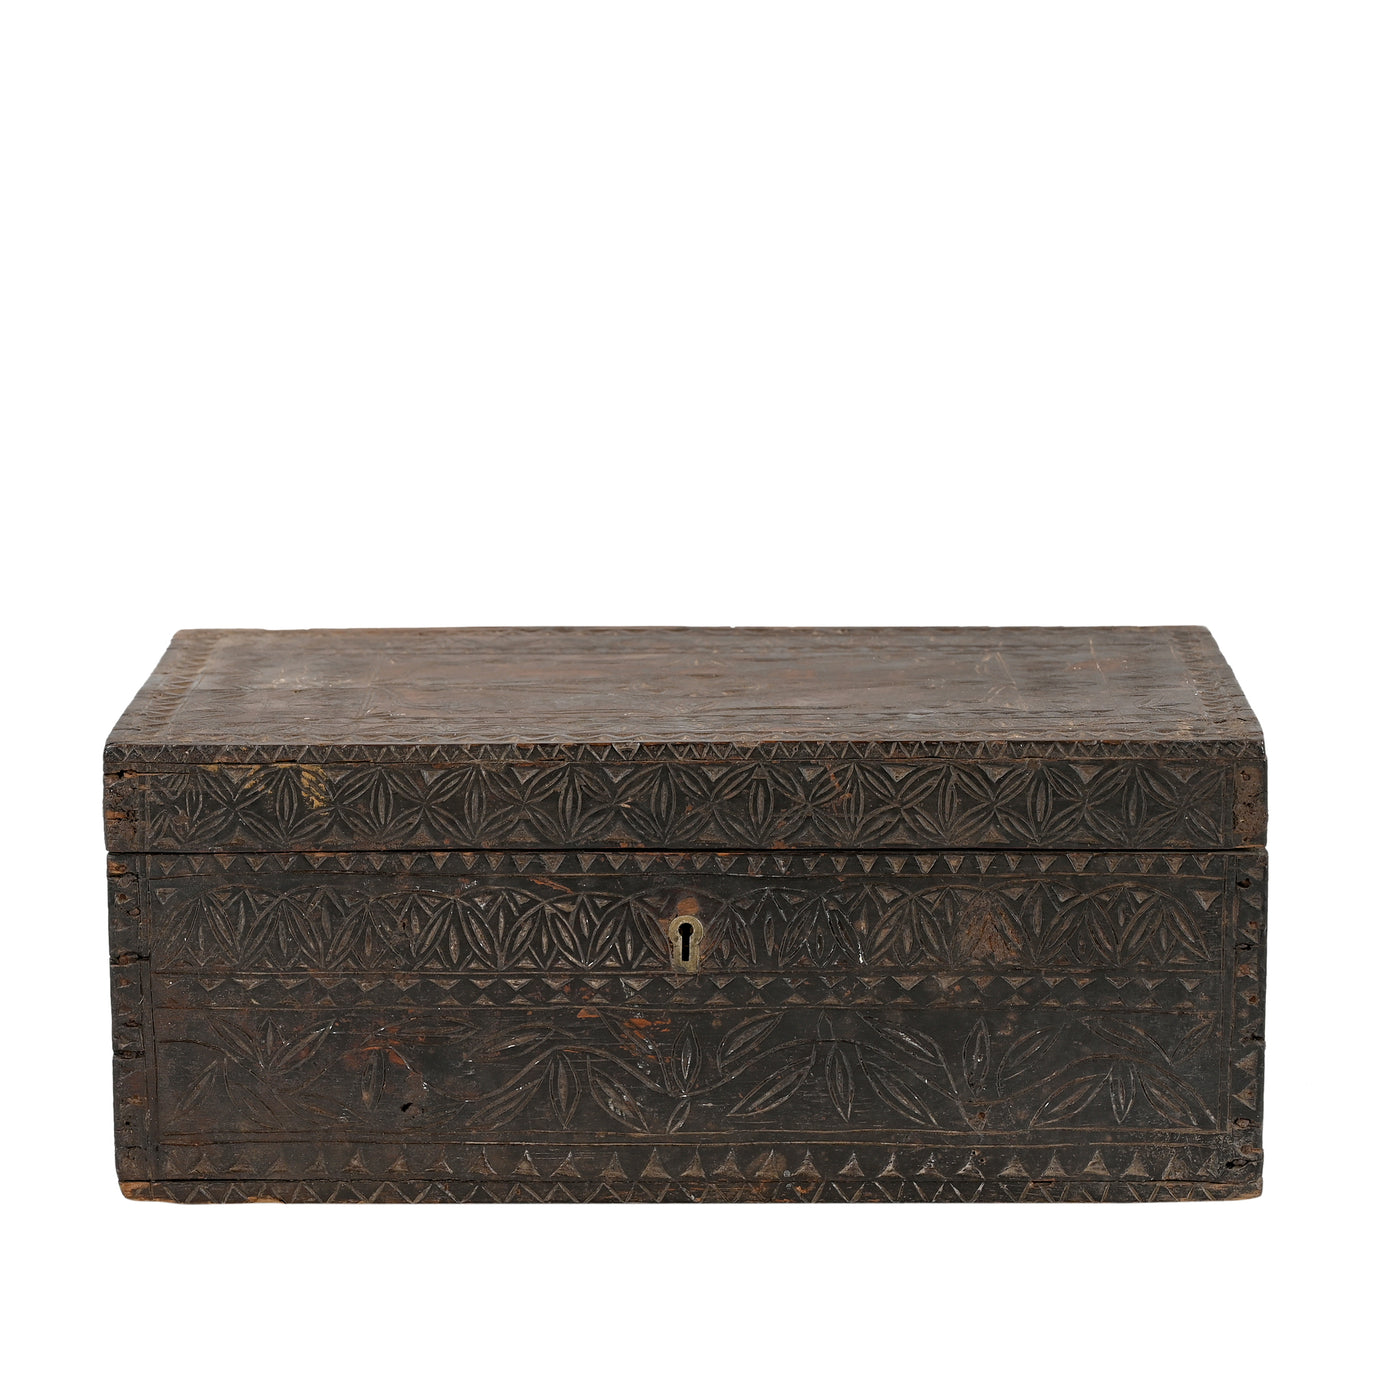 Sutta - Old cigar chest